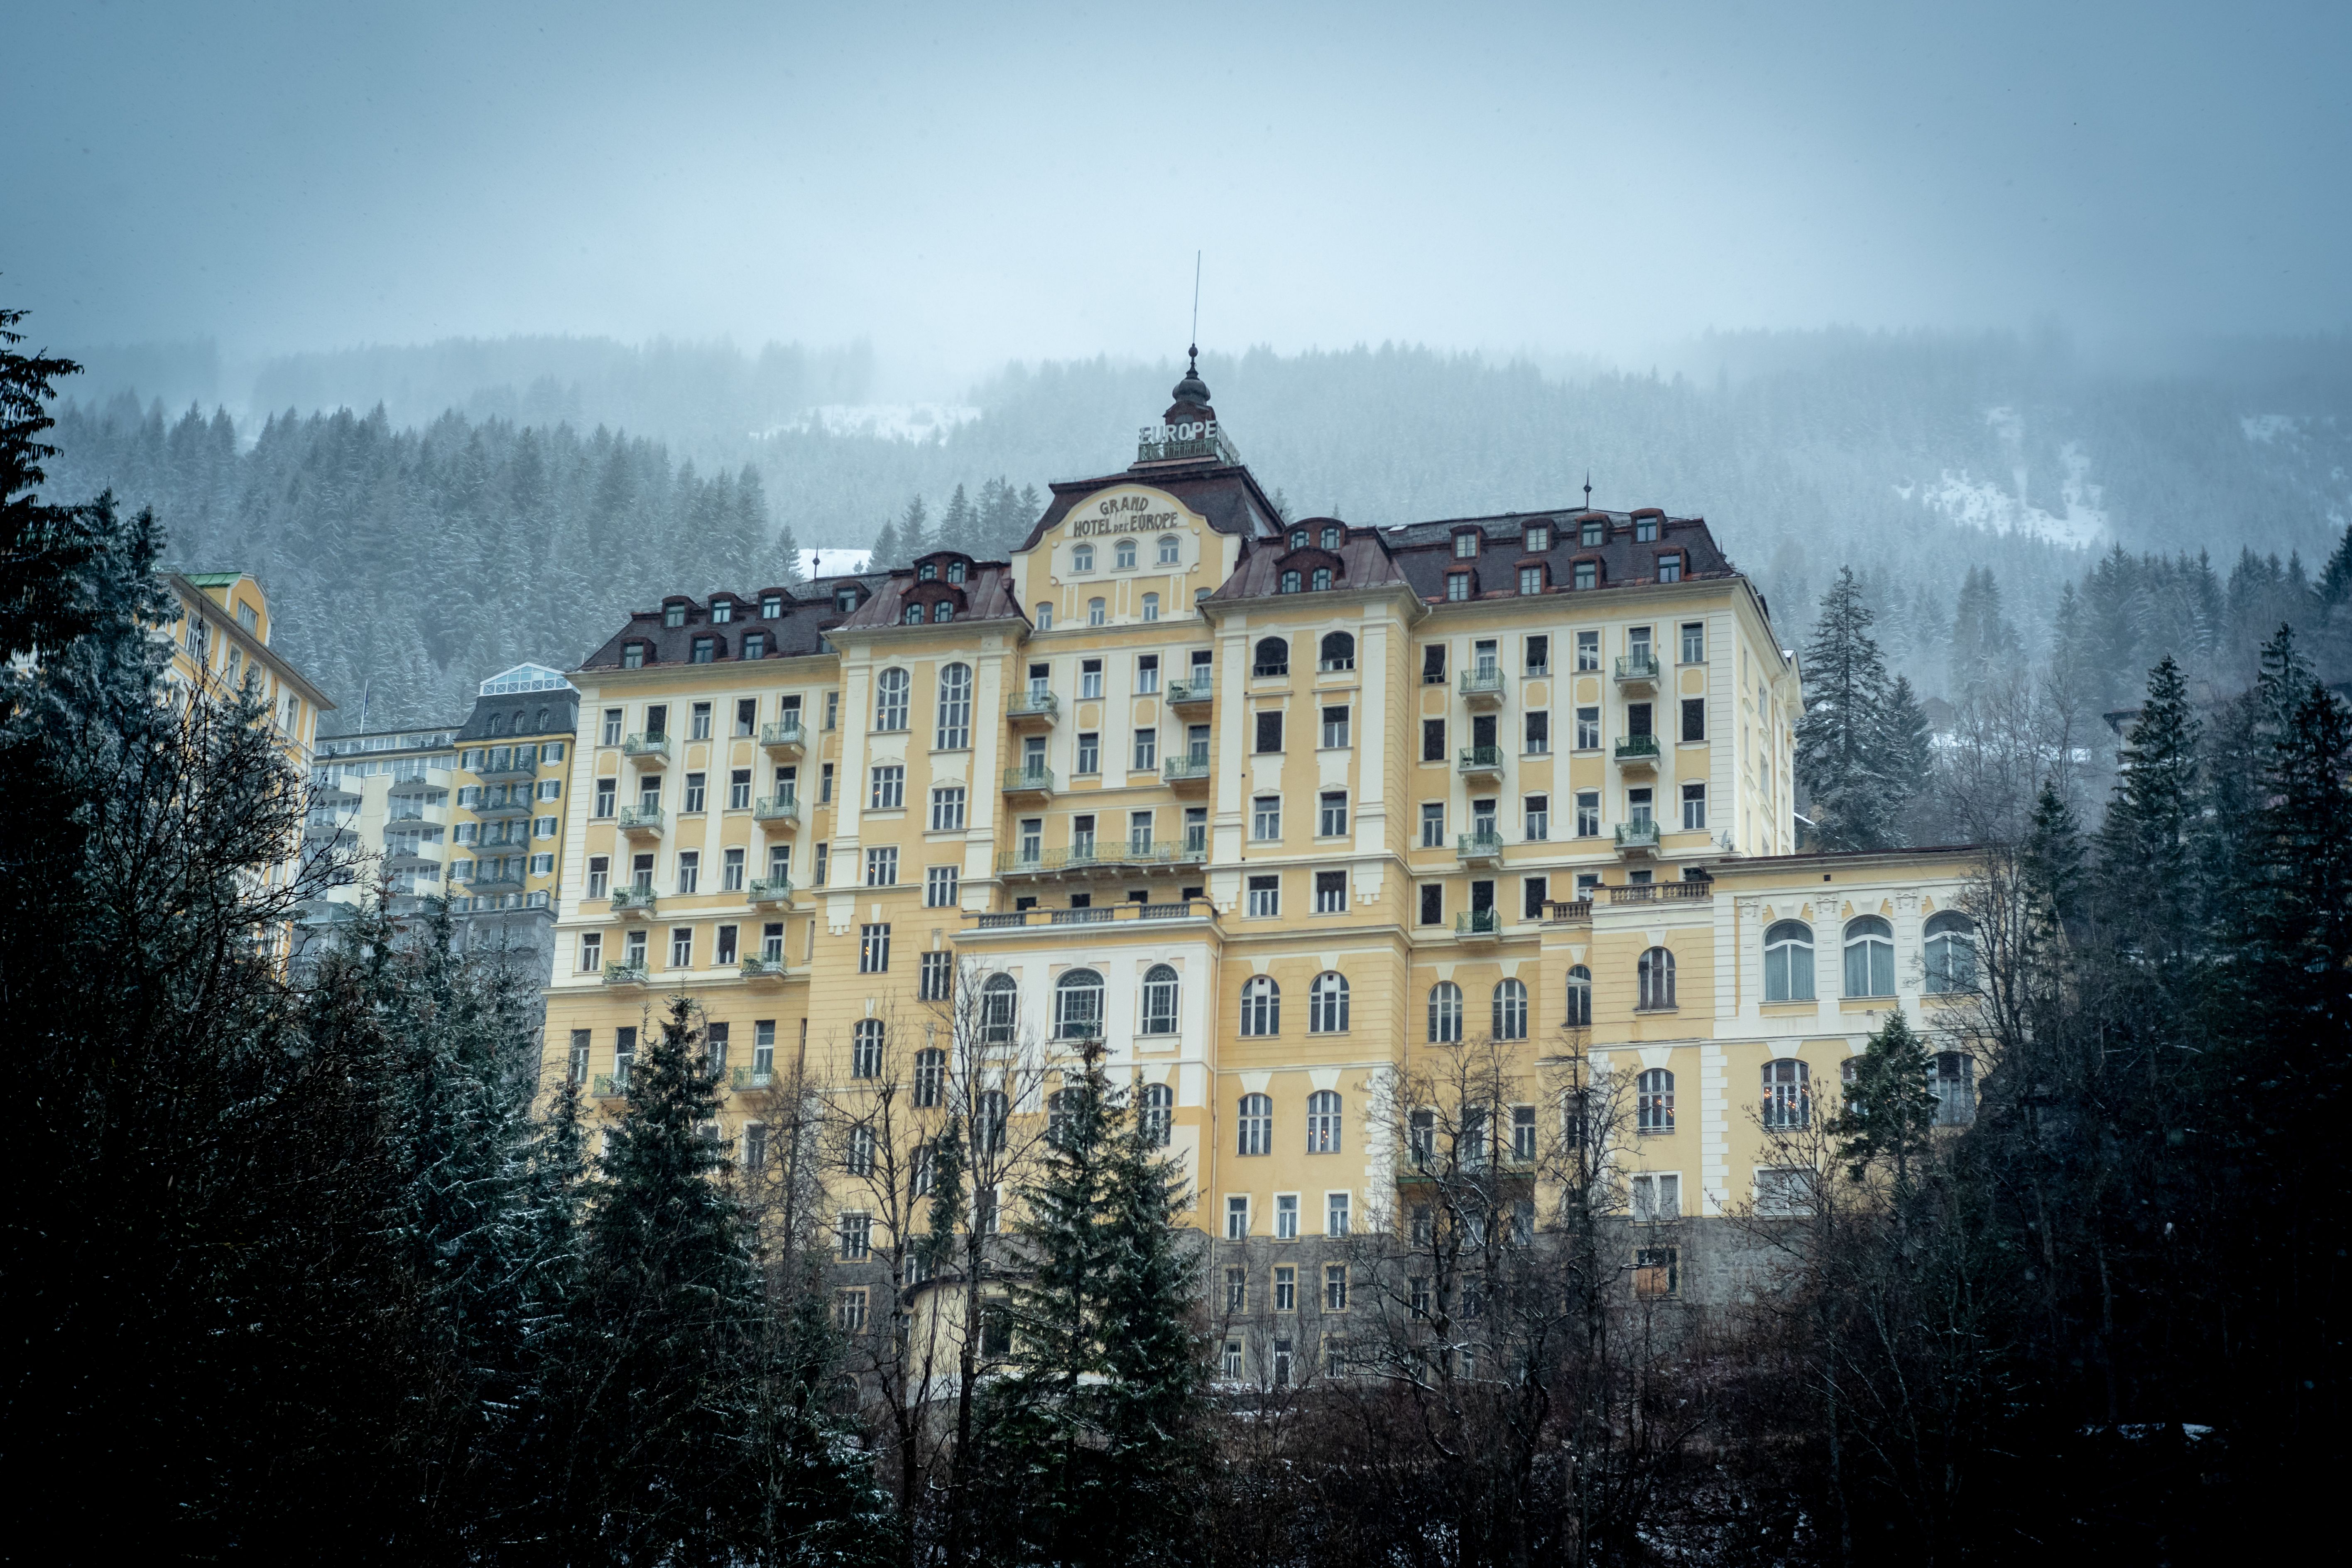 Grote oude hotels domineren het beeld in Bad Gastein